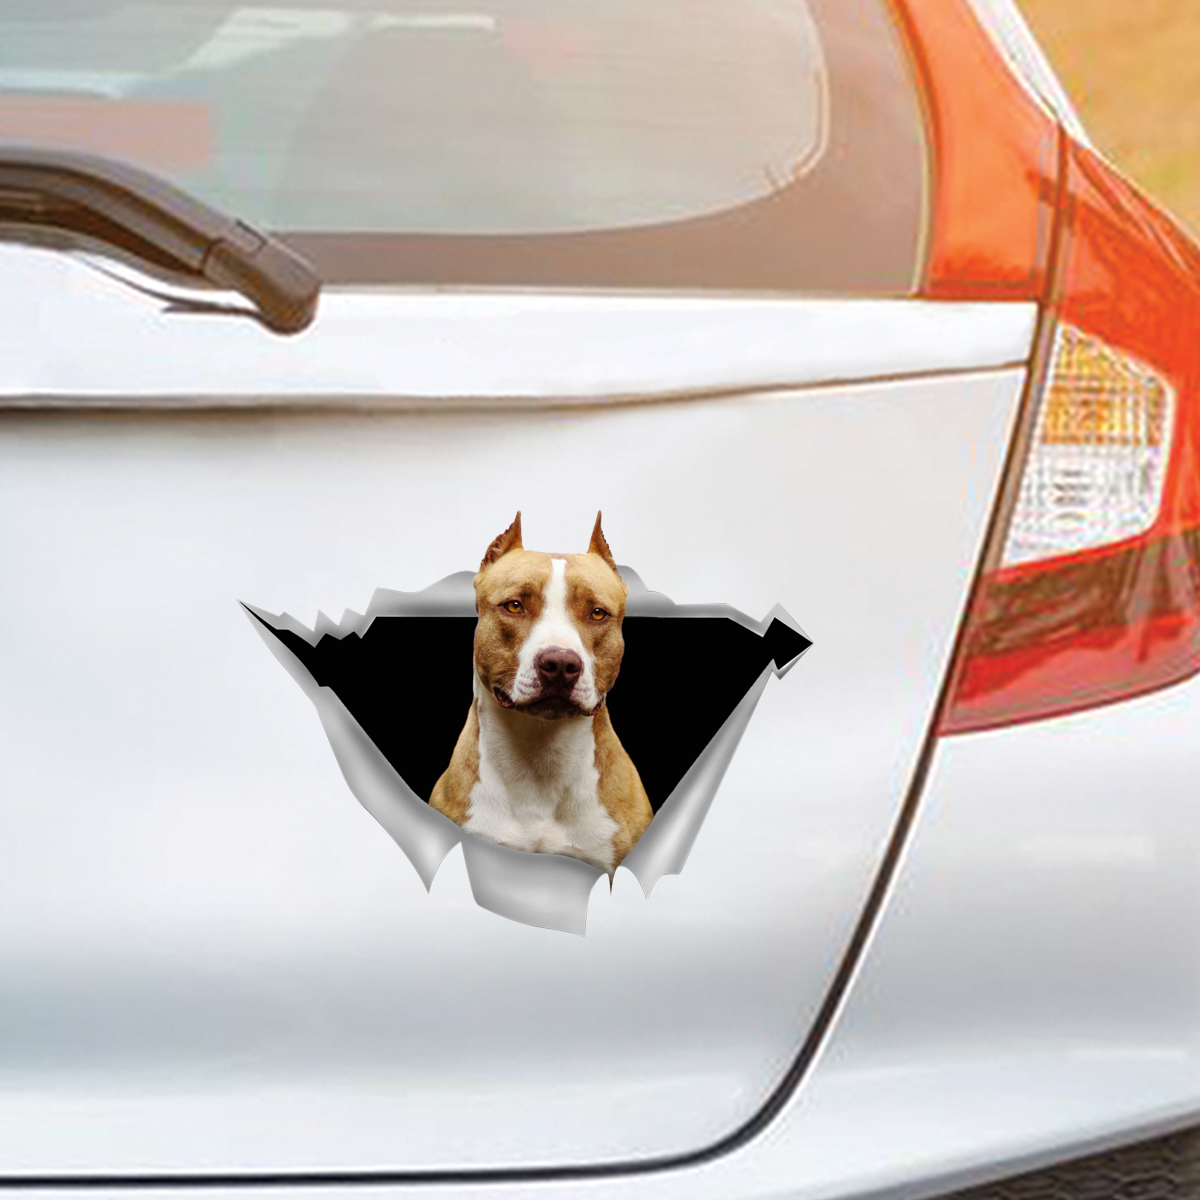 We Like Riding In Cars - American Pit Bull Terrier Car/ Door/ Fridge/ Laptop Sticker V2